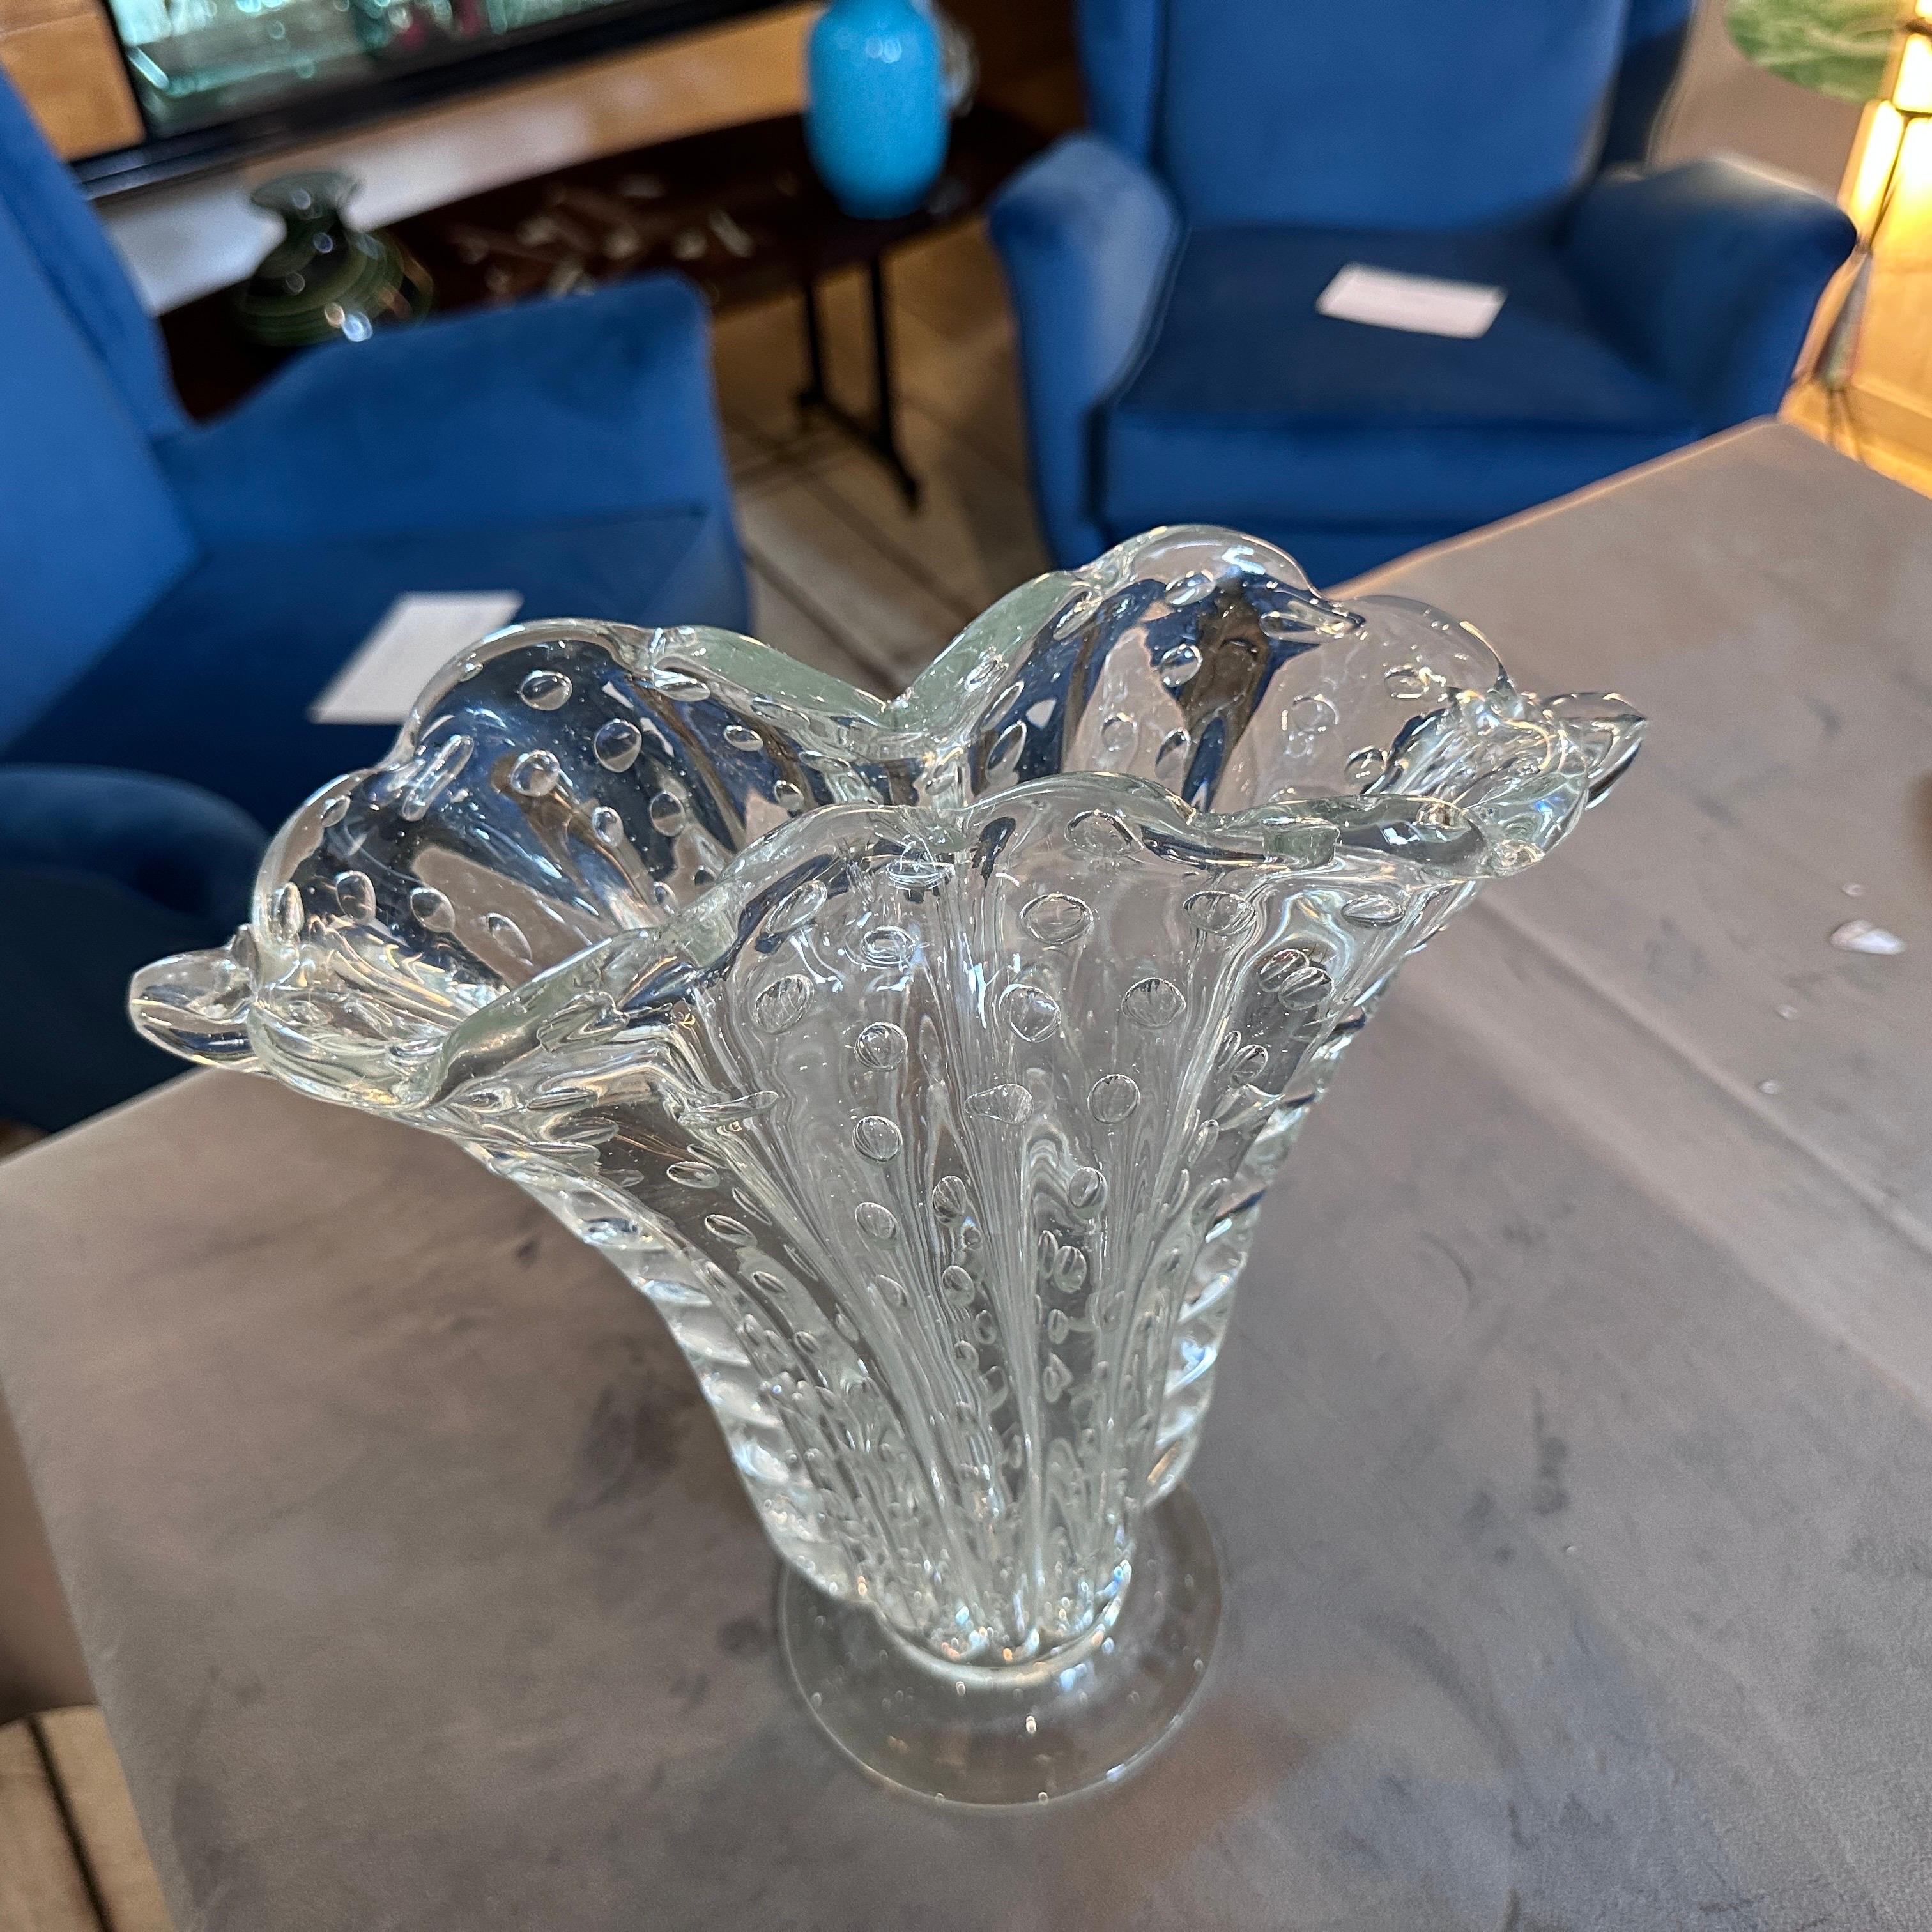 Eine Vase aus transparentem Murano-Glas, die in den fünfziger Jahren von Barovier in Venedig entworfen und hergestellt wurde. Sie ist in sehr gutem Zustand. Die Vase von Barovier ist ein atemberaubendes Stück Kunstglas, das die Meisterschaft der